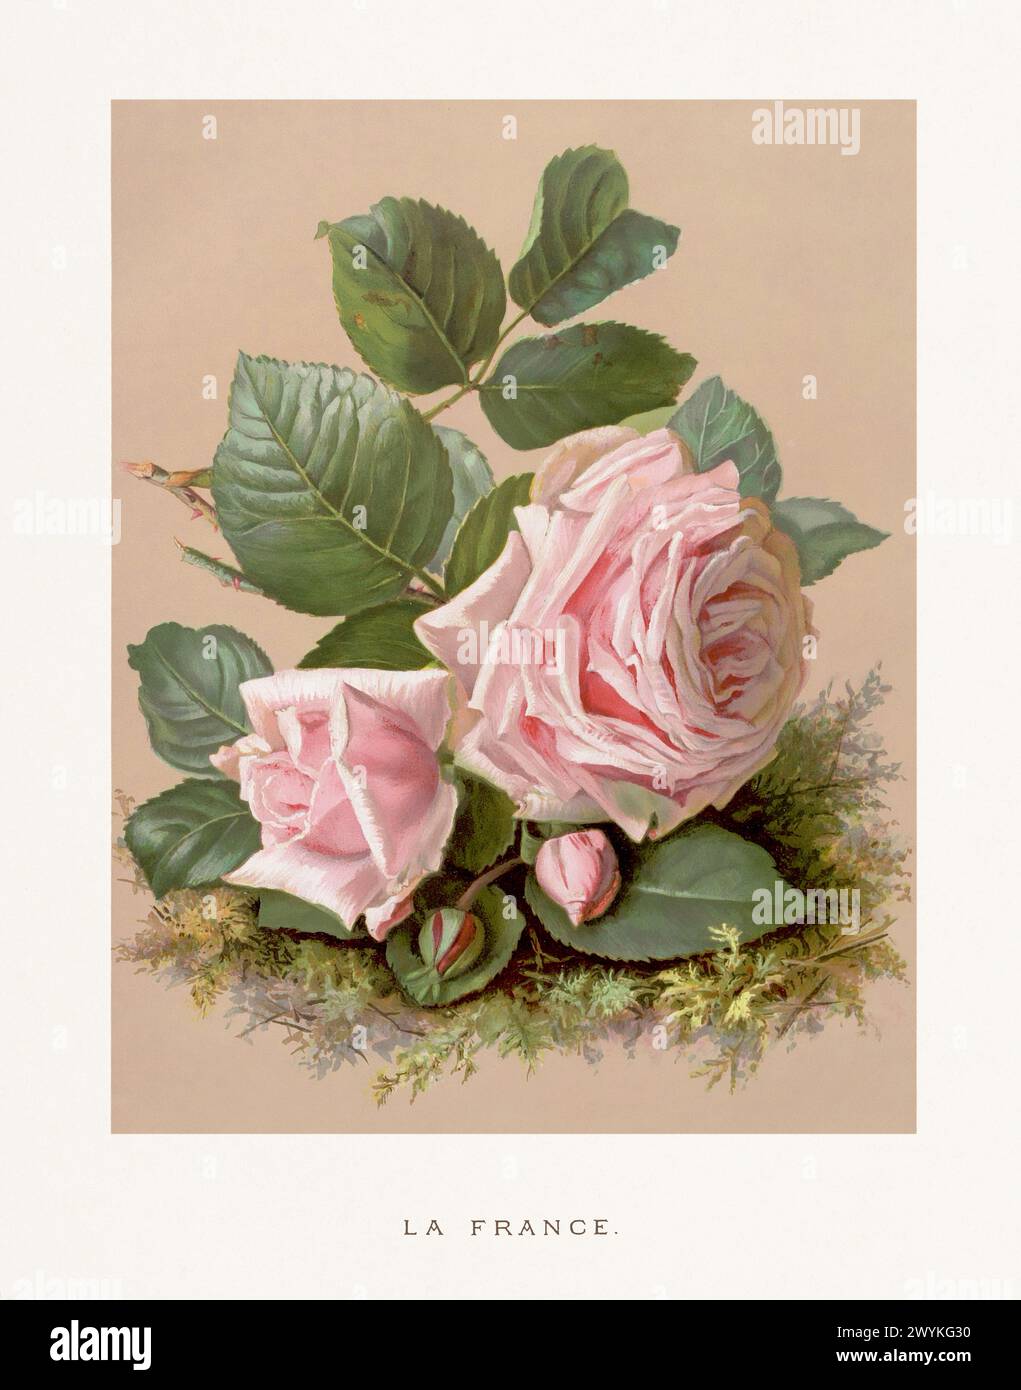 Illustrazione vintage Rose. Squisita illustrazione ad acquerello del XIX secolo di rose su un morbido sfondo beige. Accattivanti opere d'arte vintage, circa 1880 Foto Stock